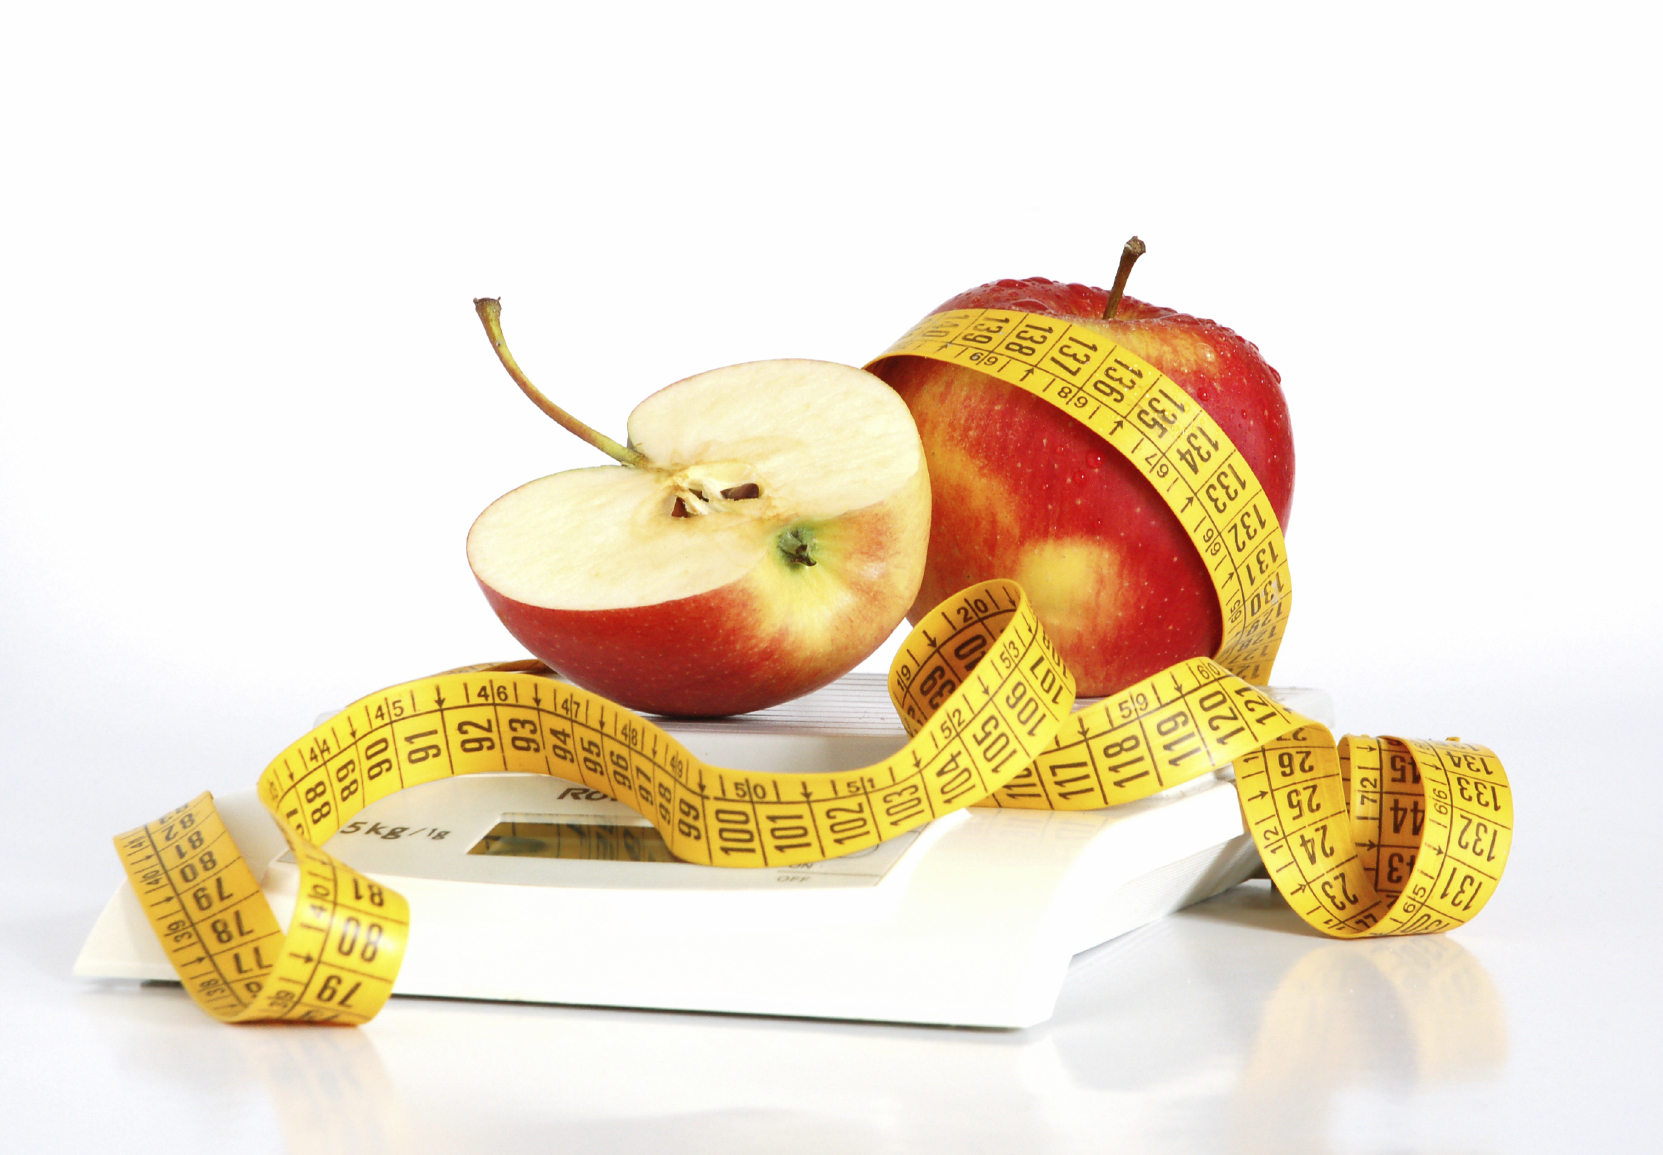 Des modifications au régime alimentaire, l’obligation de rendre des comptes et des pesées régulières sont des éléments clés pour conserver un poids santé. 